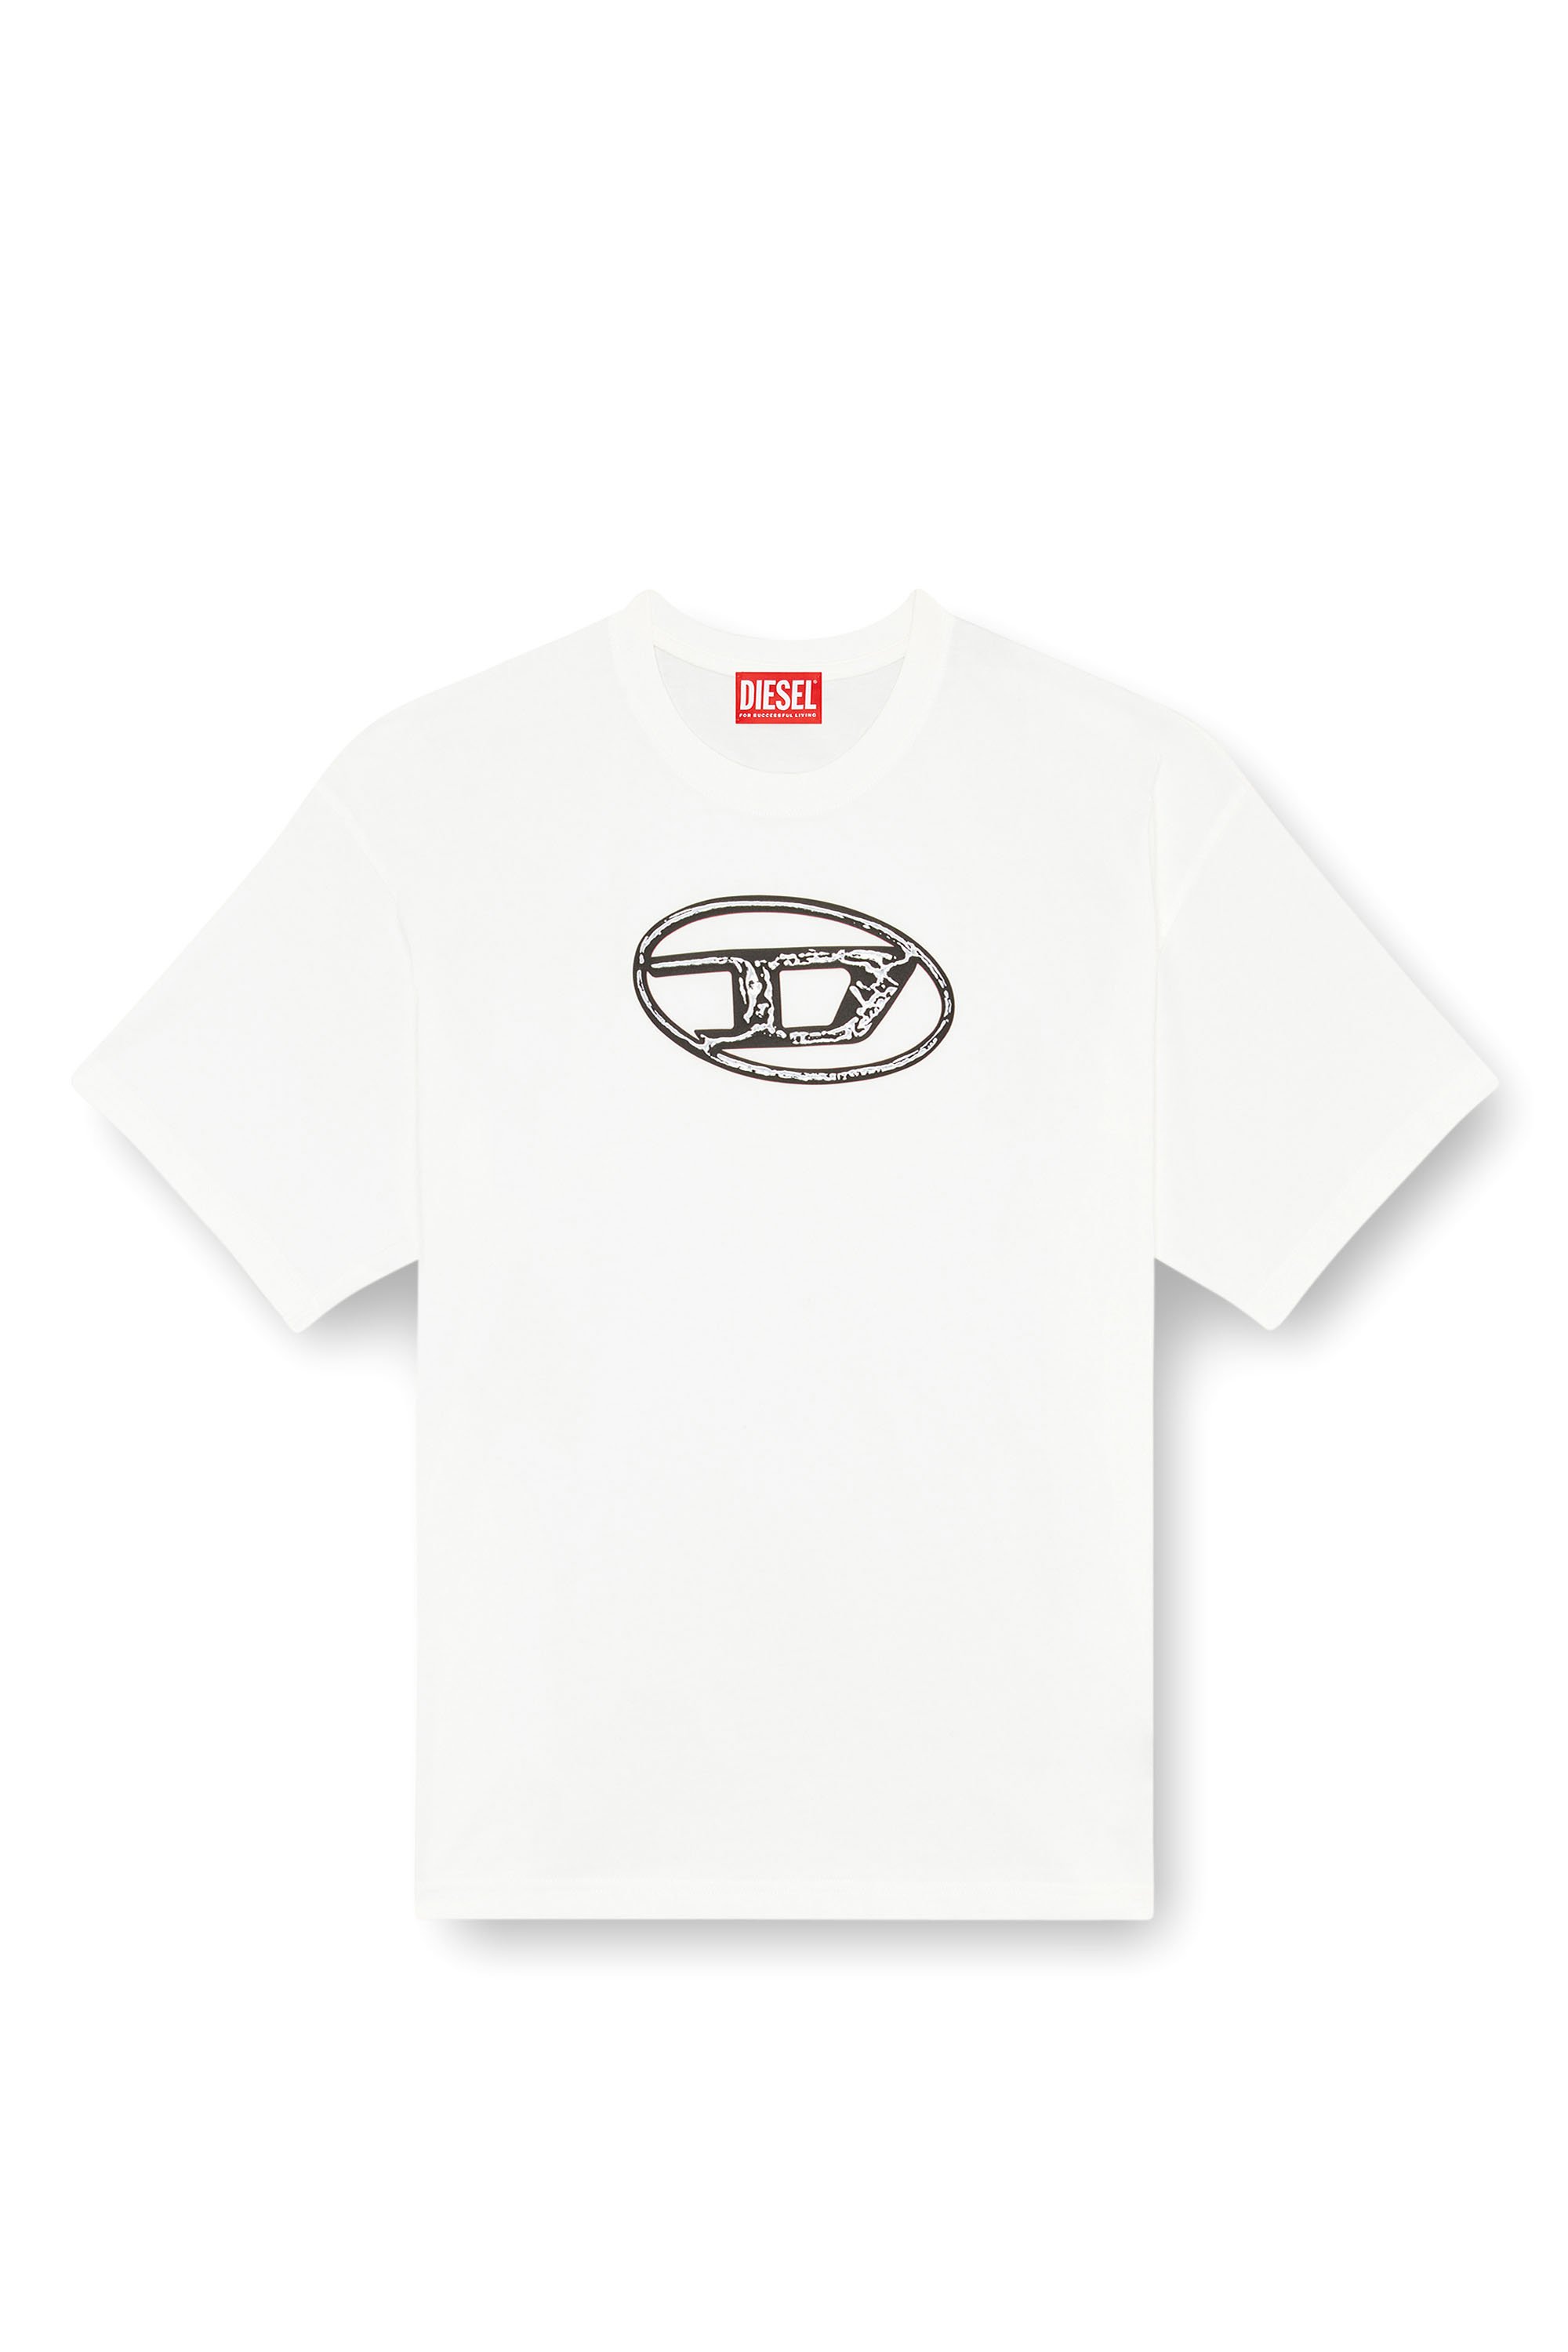 Diesel - T-BOXT-Q22, Hombre Camiseta desteñida con estampado Oval D in Blanco - Image 3